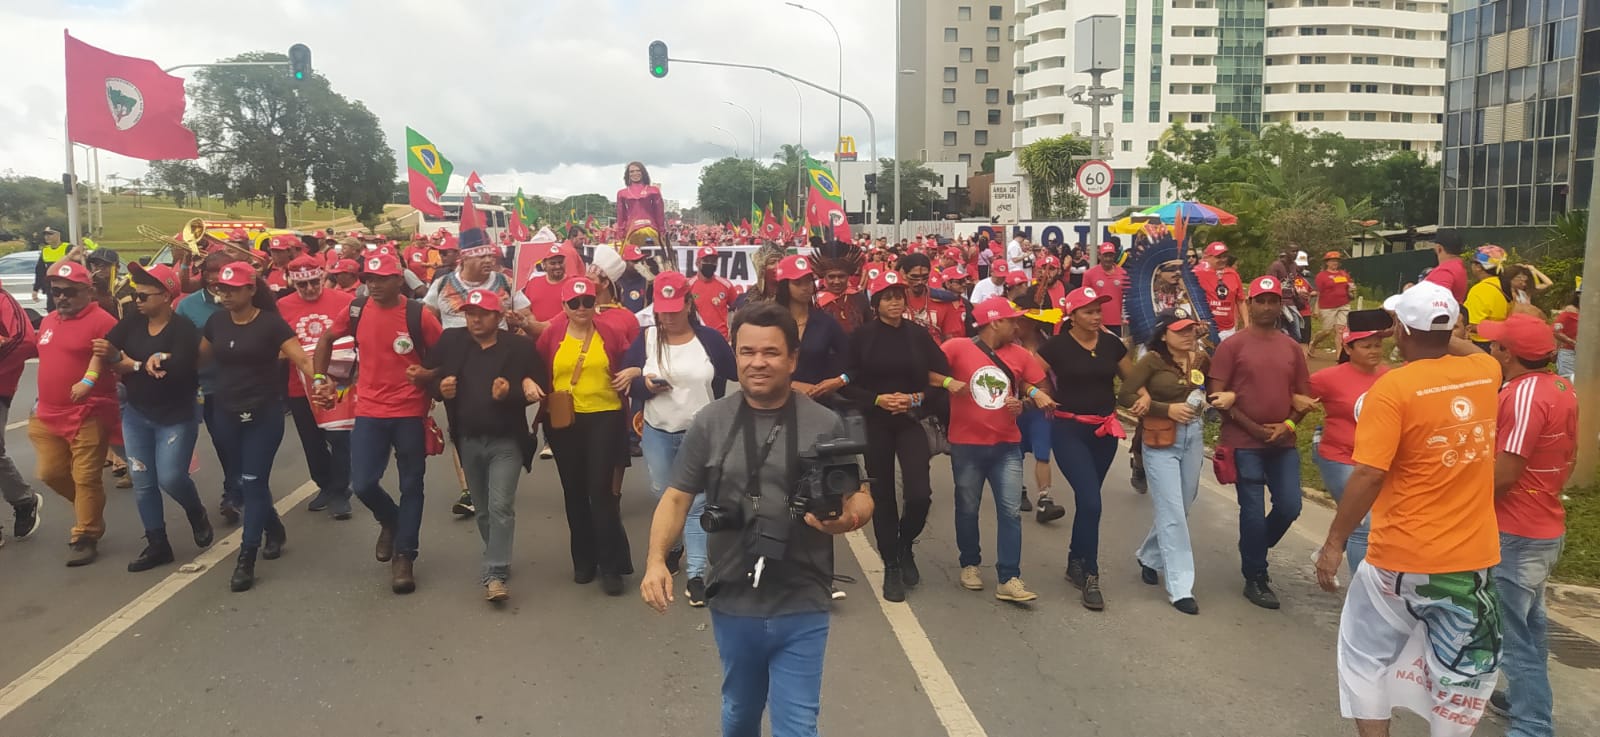 Dez mil pessoas de movimentos populares marcharam para ocupar à Praça dos Três Poderes